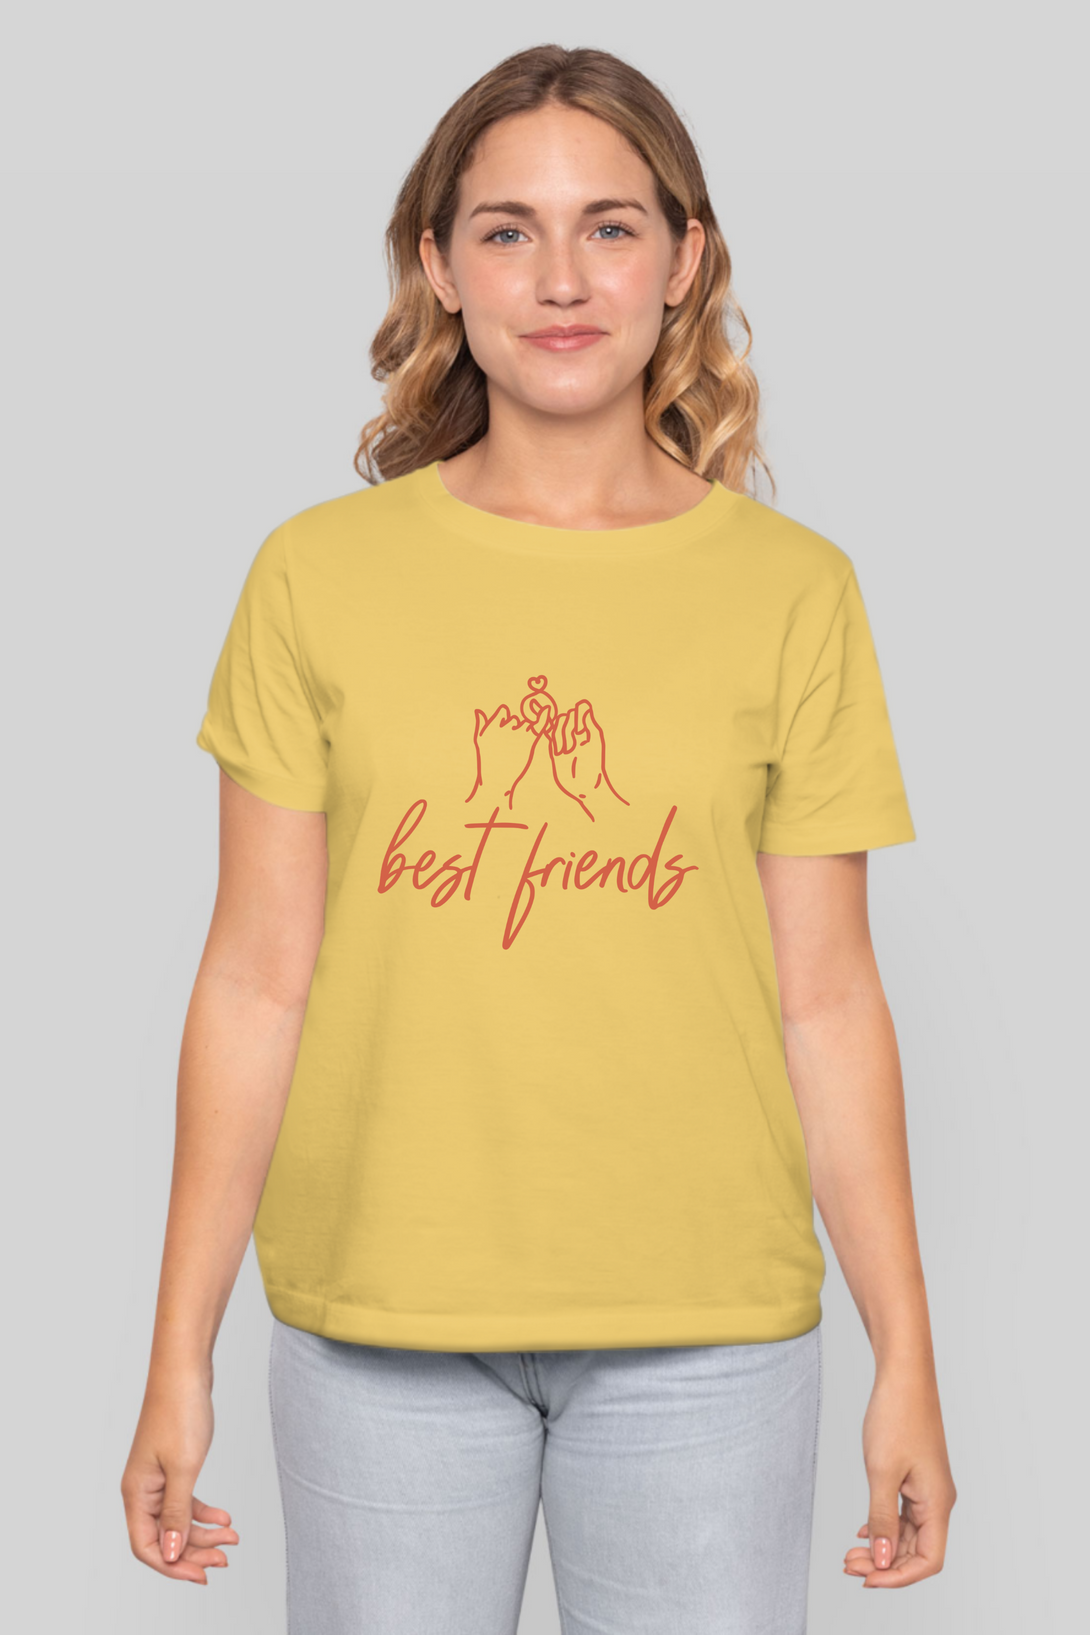 Best Friends Printed T-Shirt For Women - WowWaves - 7